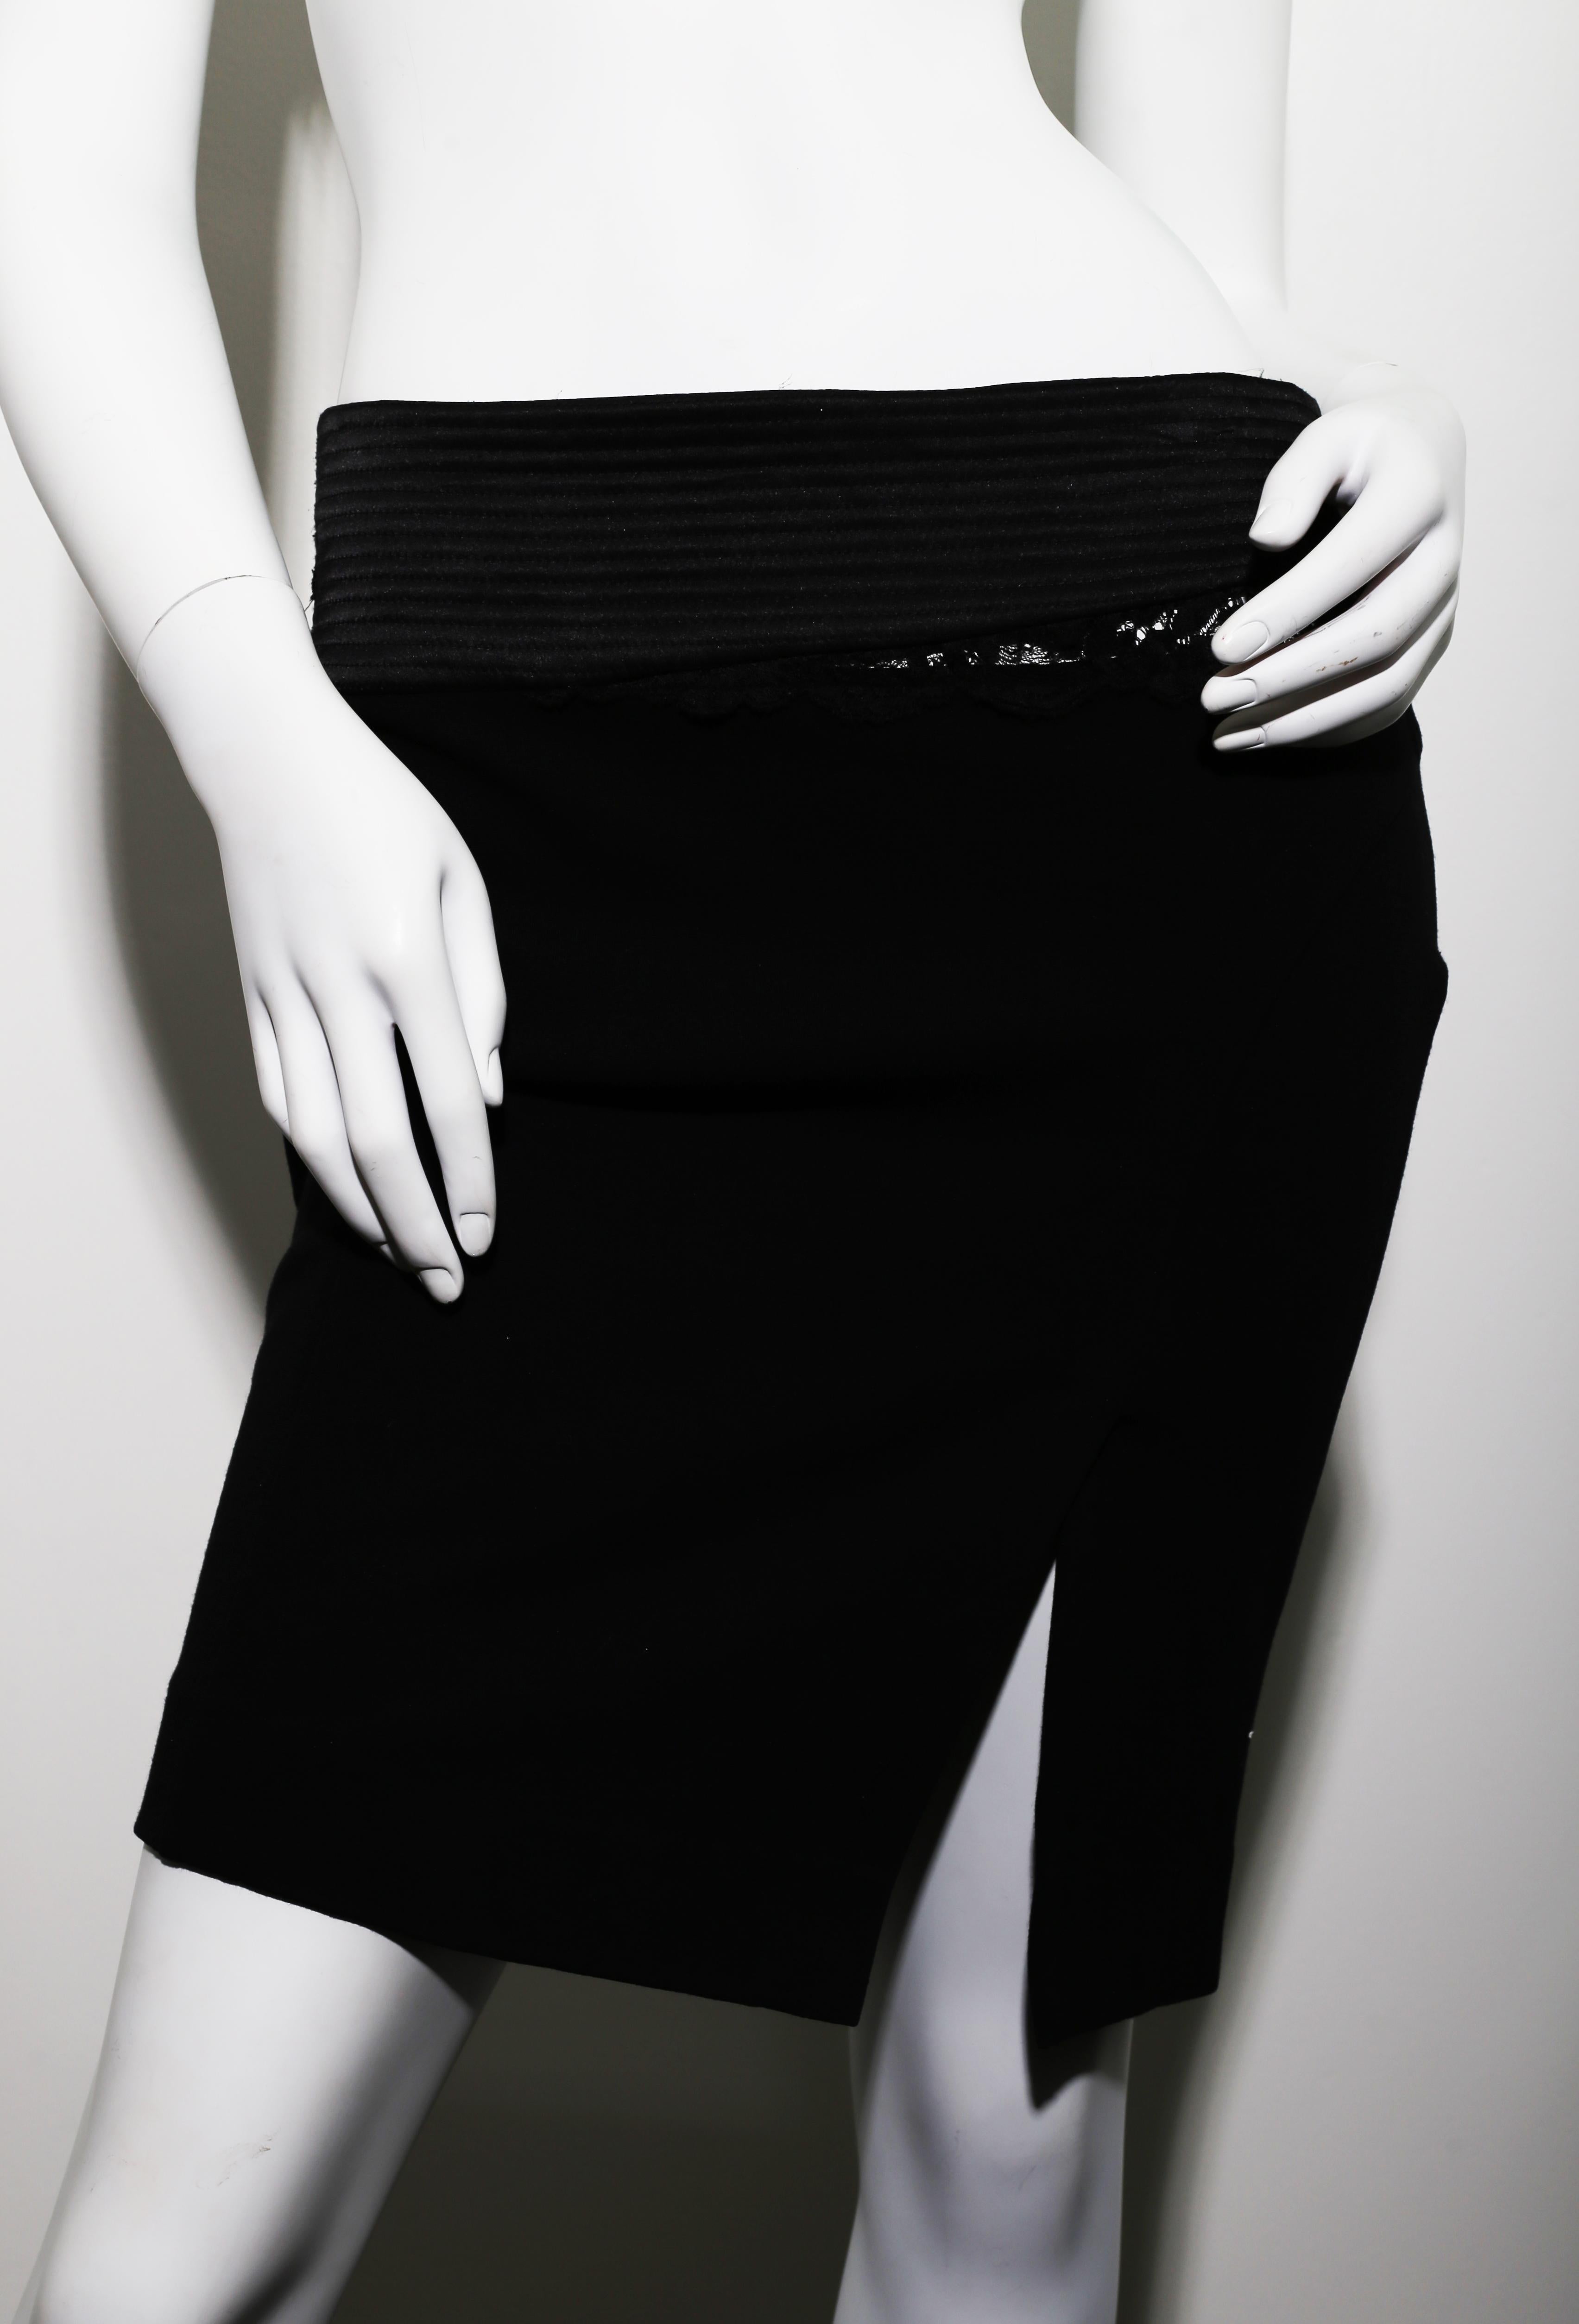 Versace Jeans Couture Mini-jupe noire en dentelle et strech.  
Ce site  cette jupe sensuelle épousera parfaitement les courbes de votre corps.  
Matière : viscose, polyamide, spandex
Taille Medium (IT 42)

Commandes bienvenues !  toutes les